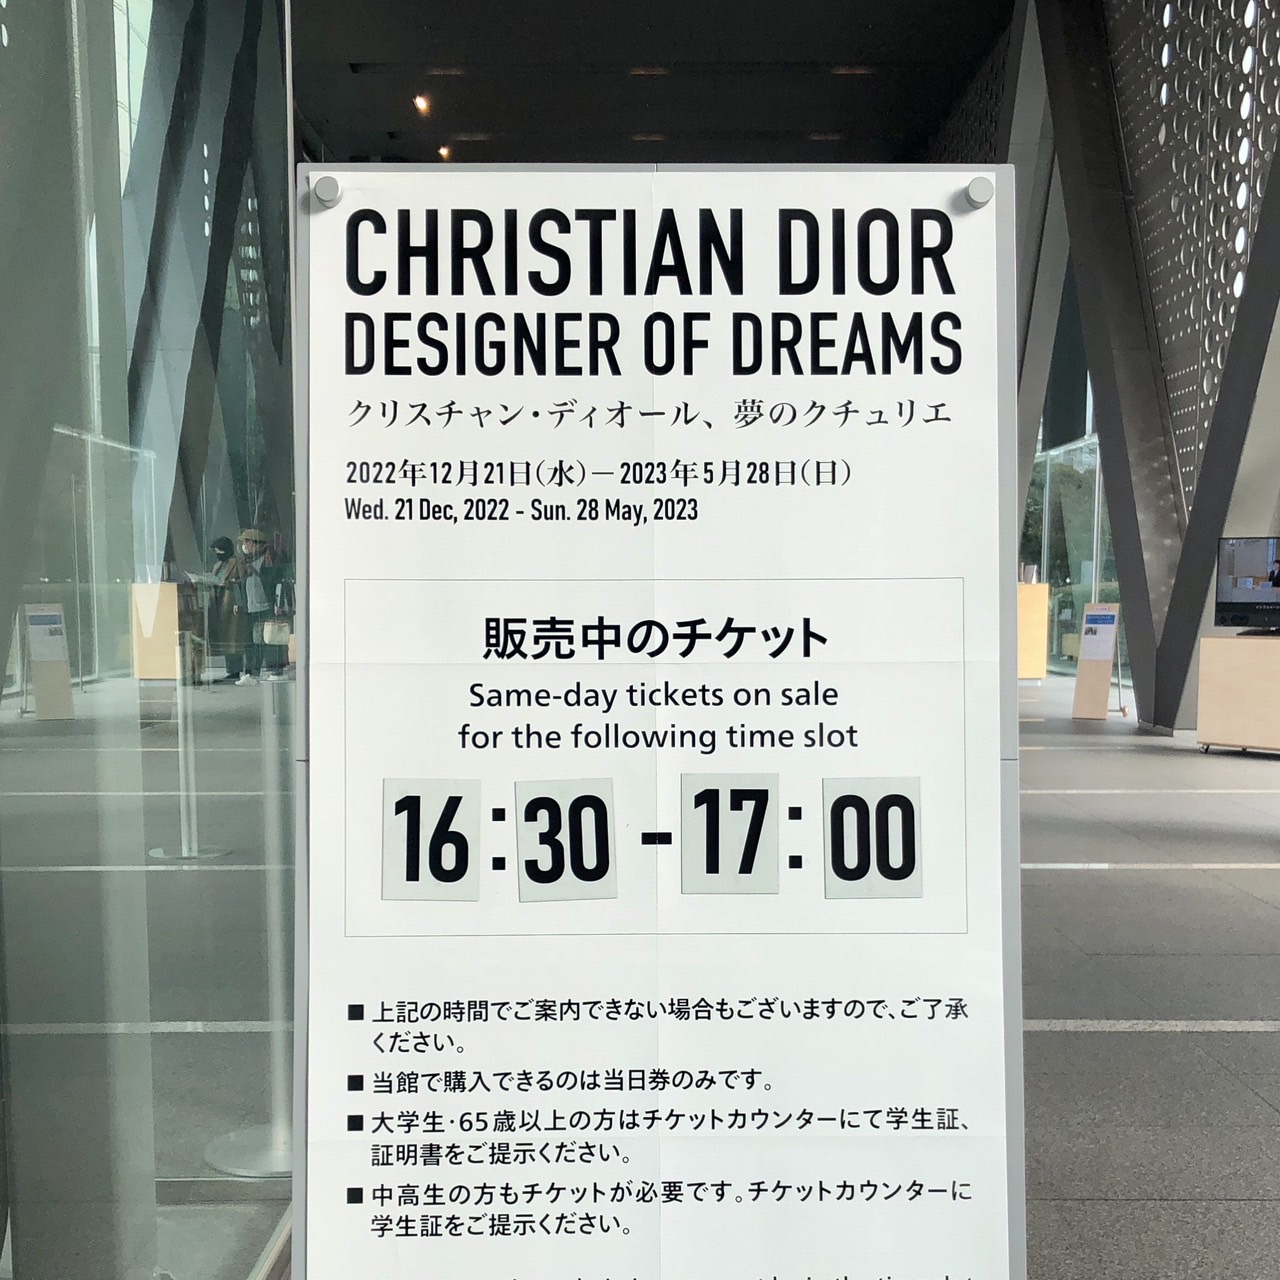 美術館/博物館Dior展 チケット 5/21 18:00〜 1枚 - mirabellor.com